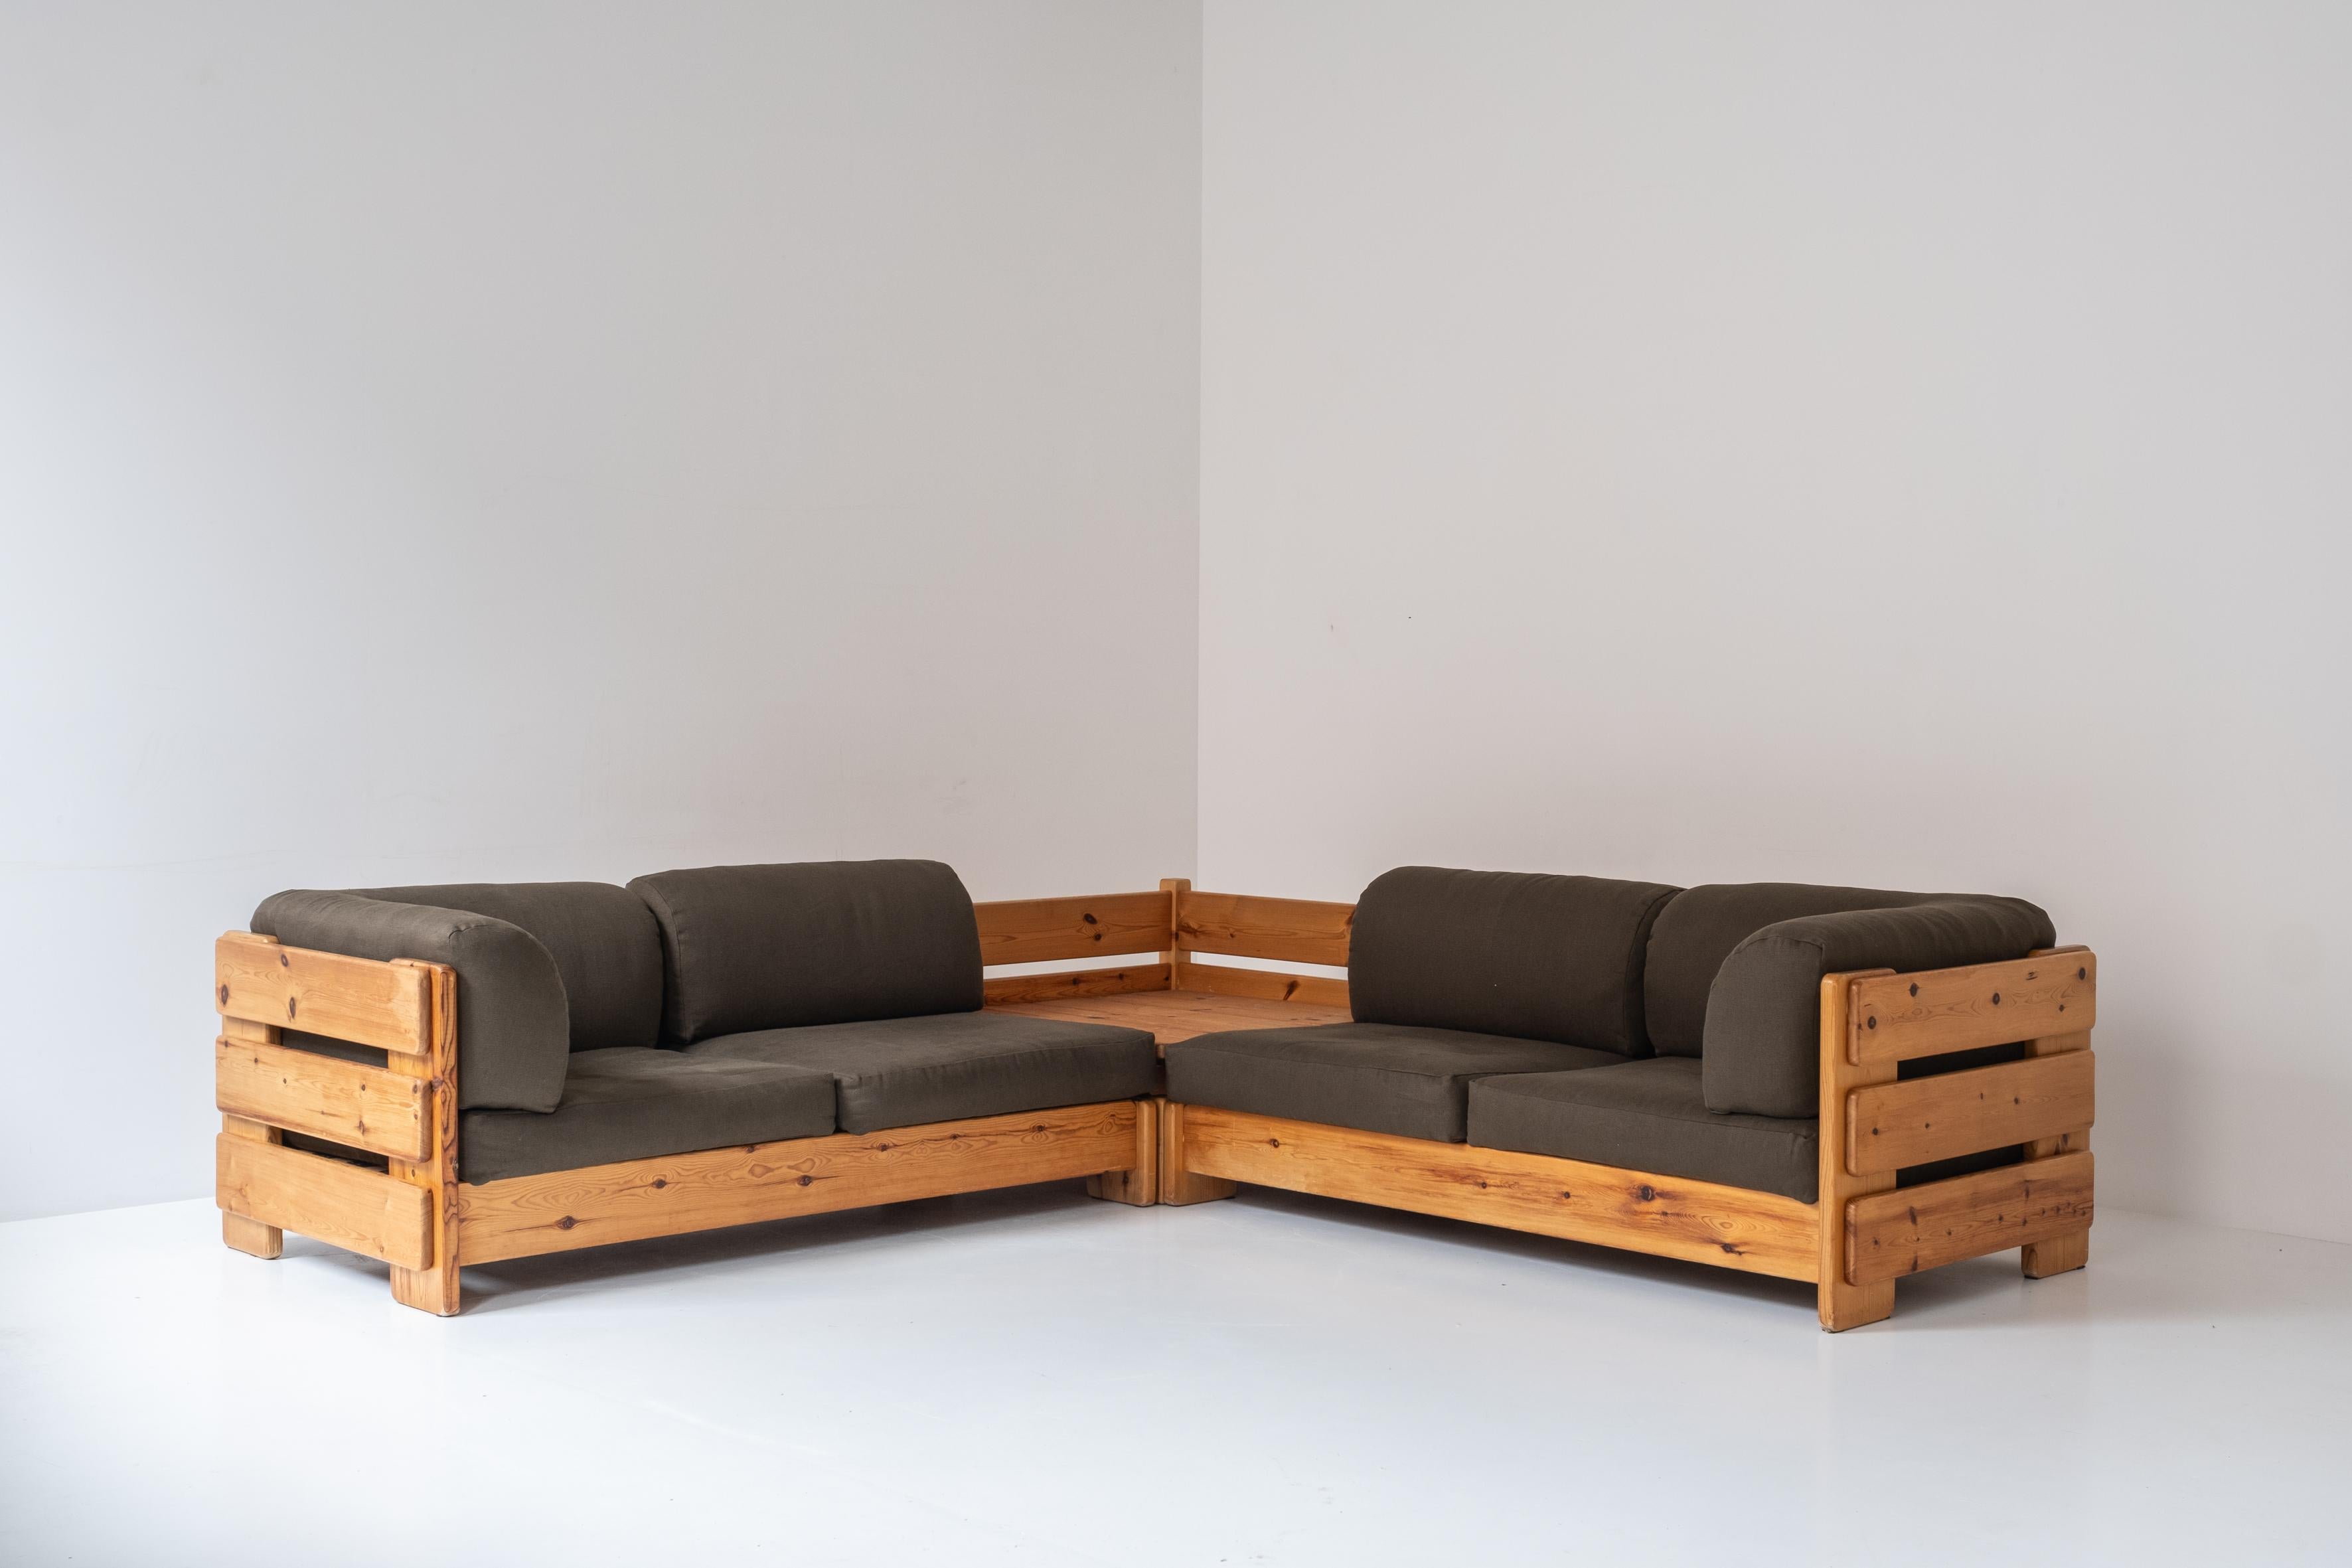 Groupe de sièges français, conçu et fabriqué dans les années 1960. Ce canapé d'angle est fabriqué en lattes de pin massif et les coussins sont fraîchement retapissés dans un tissu vert. Comme cette unité se compose de trois éléments individuels,